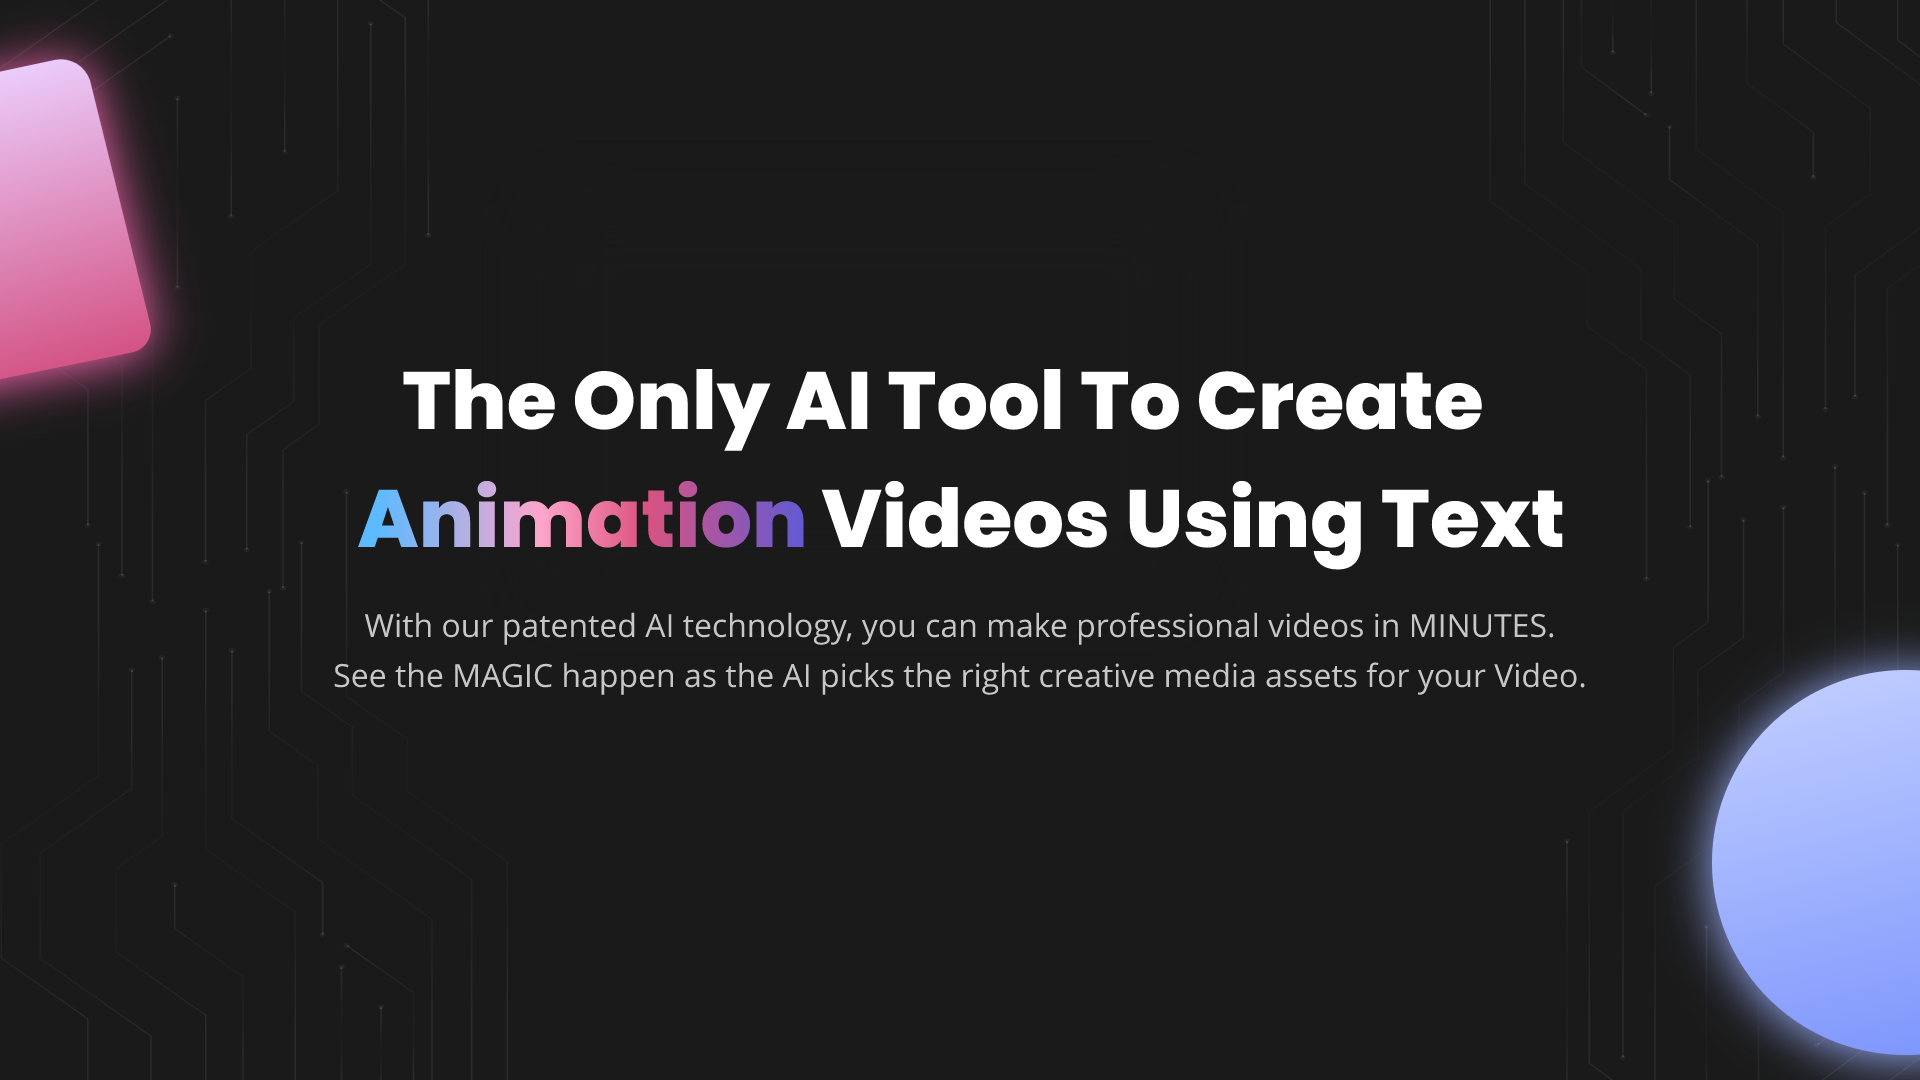 Steve Ai - outil de création vidéo propulsé par l'AI